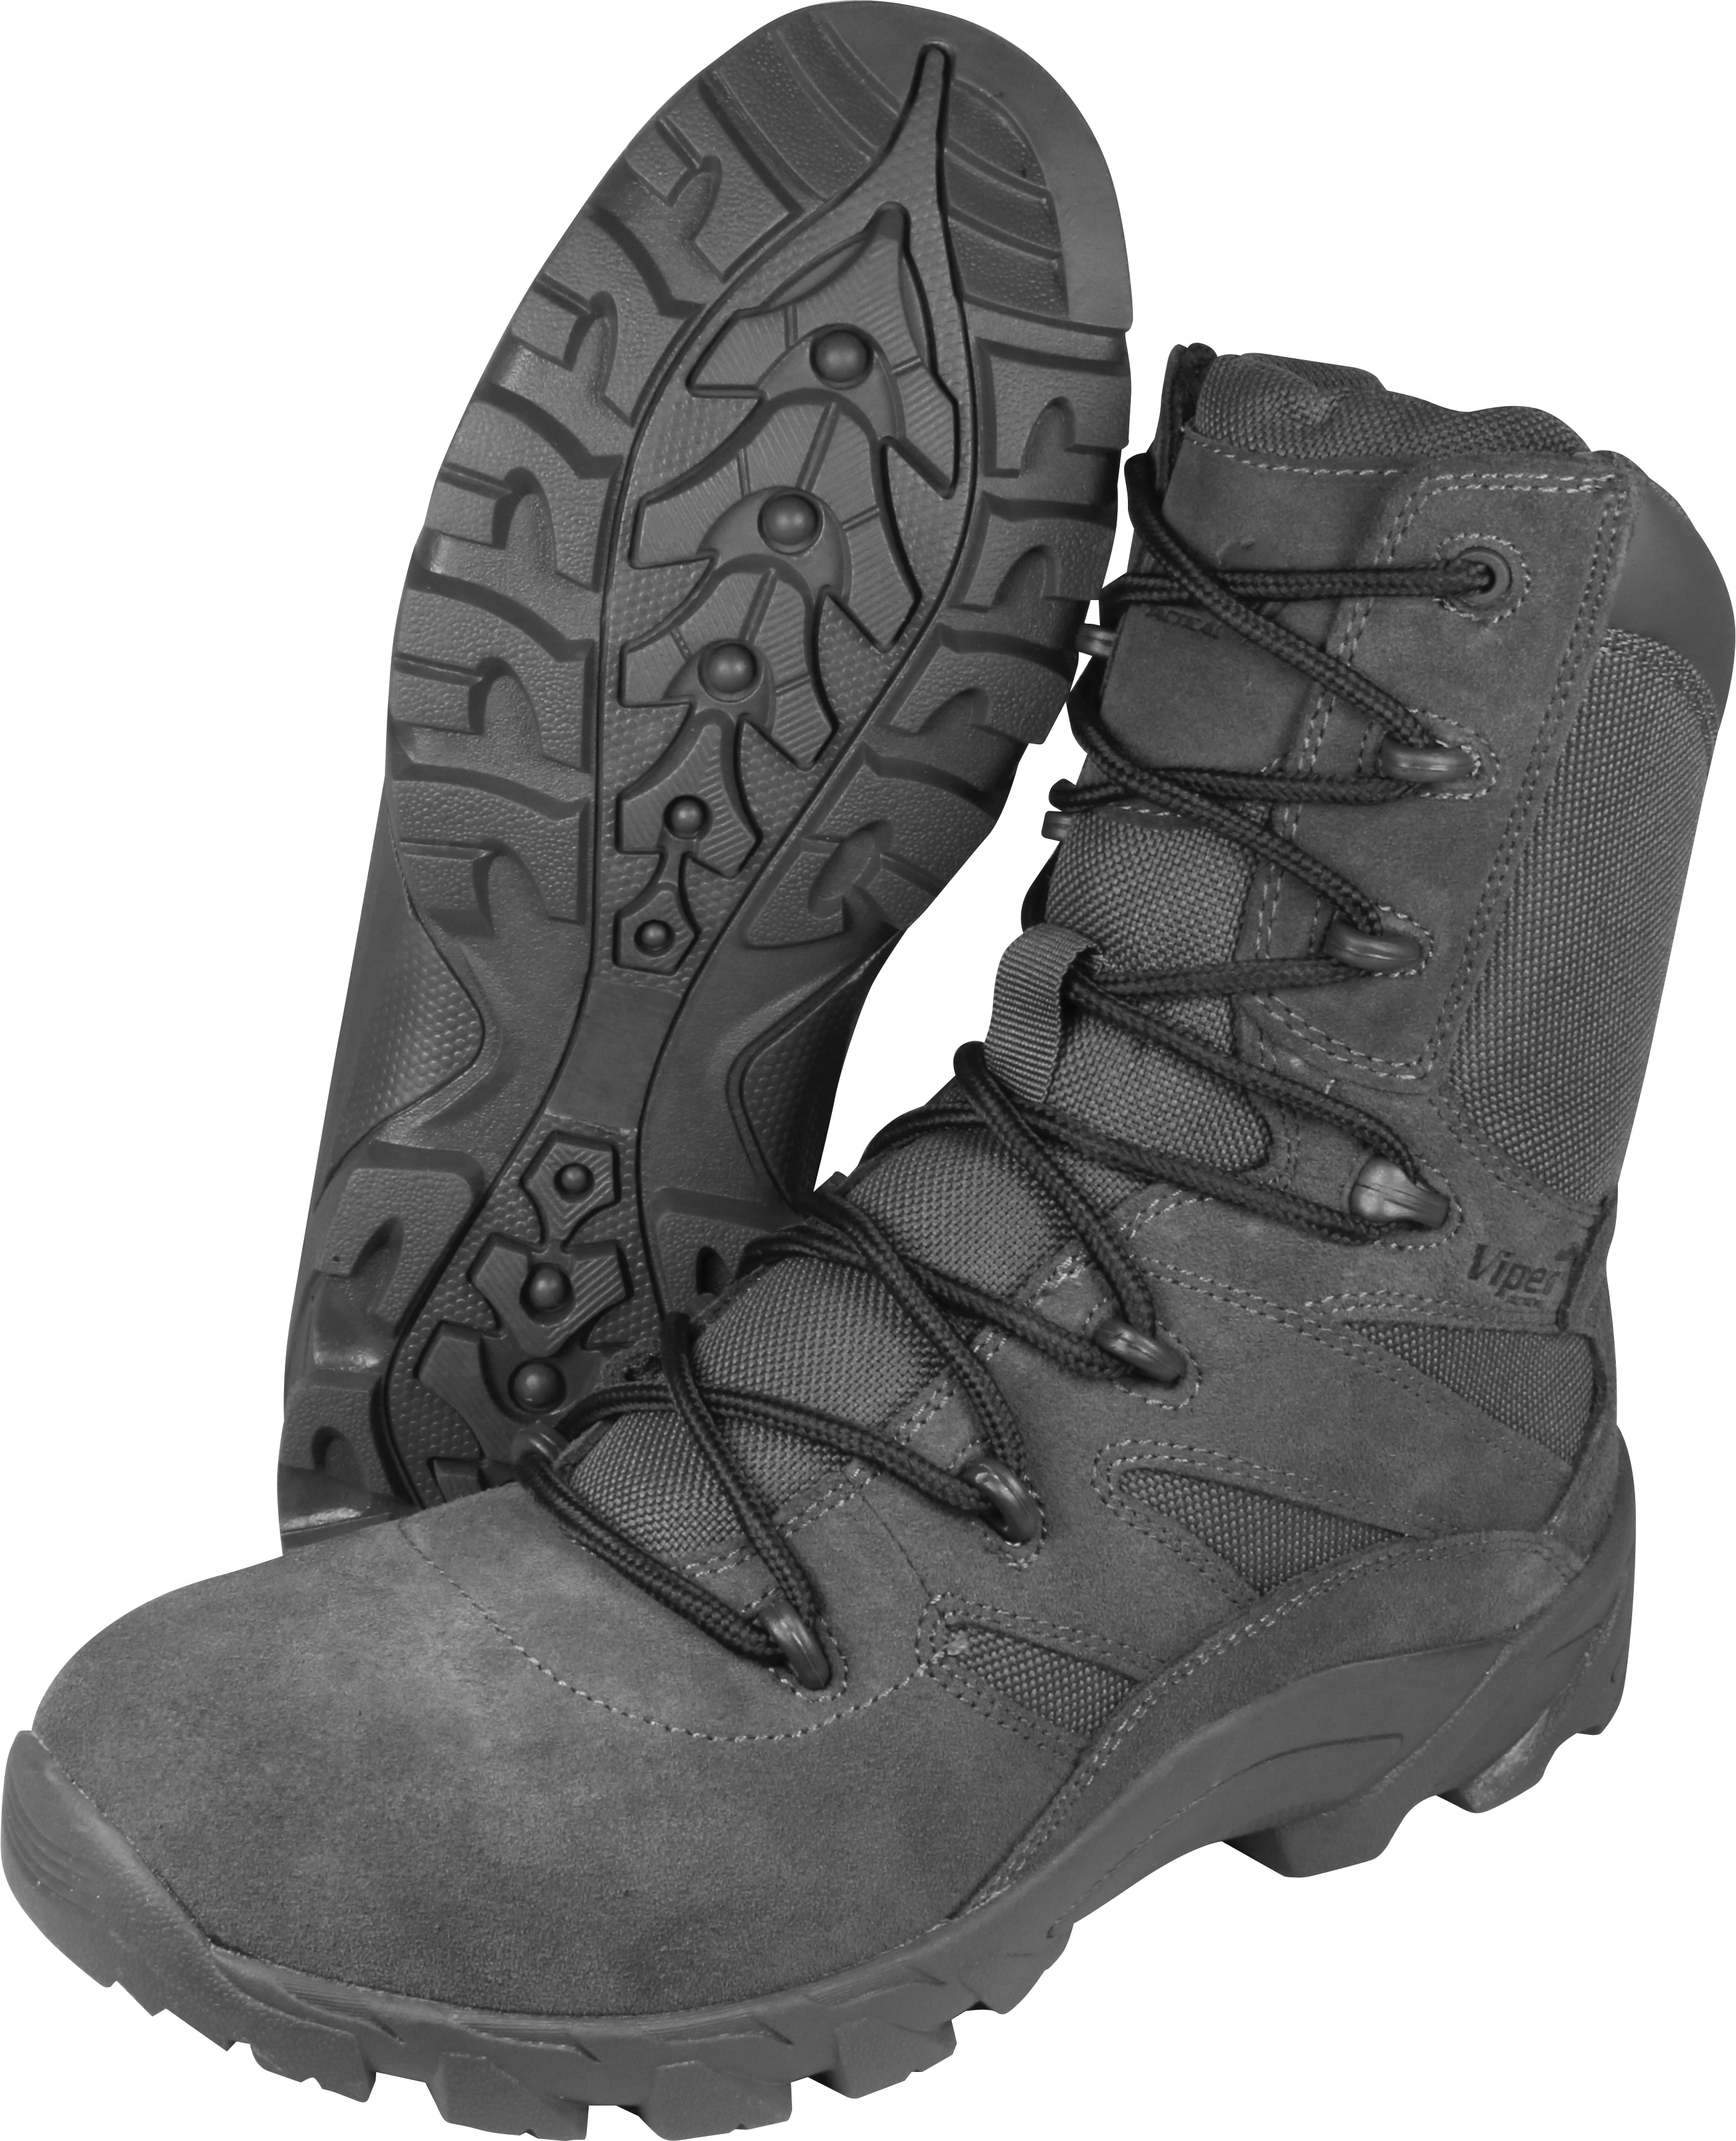 Viper Tactical Covert Boots Titanium